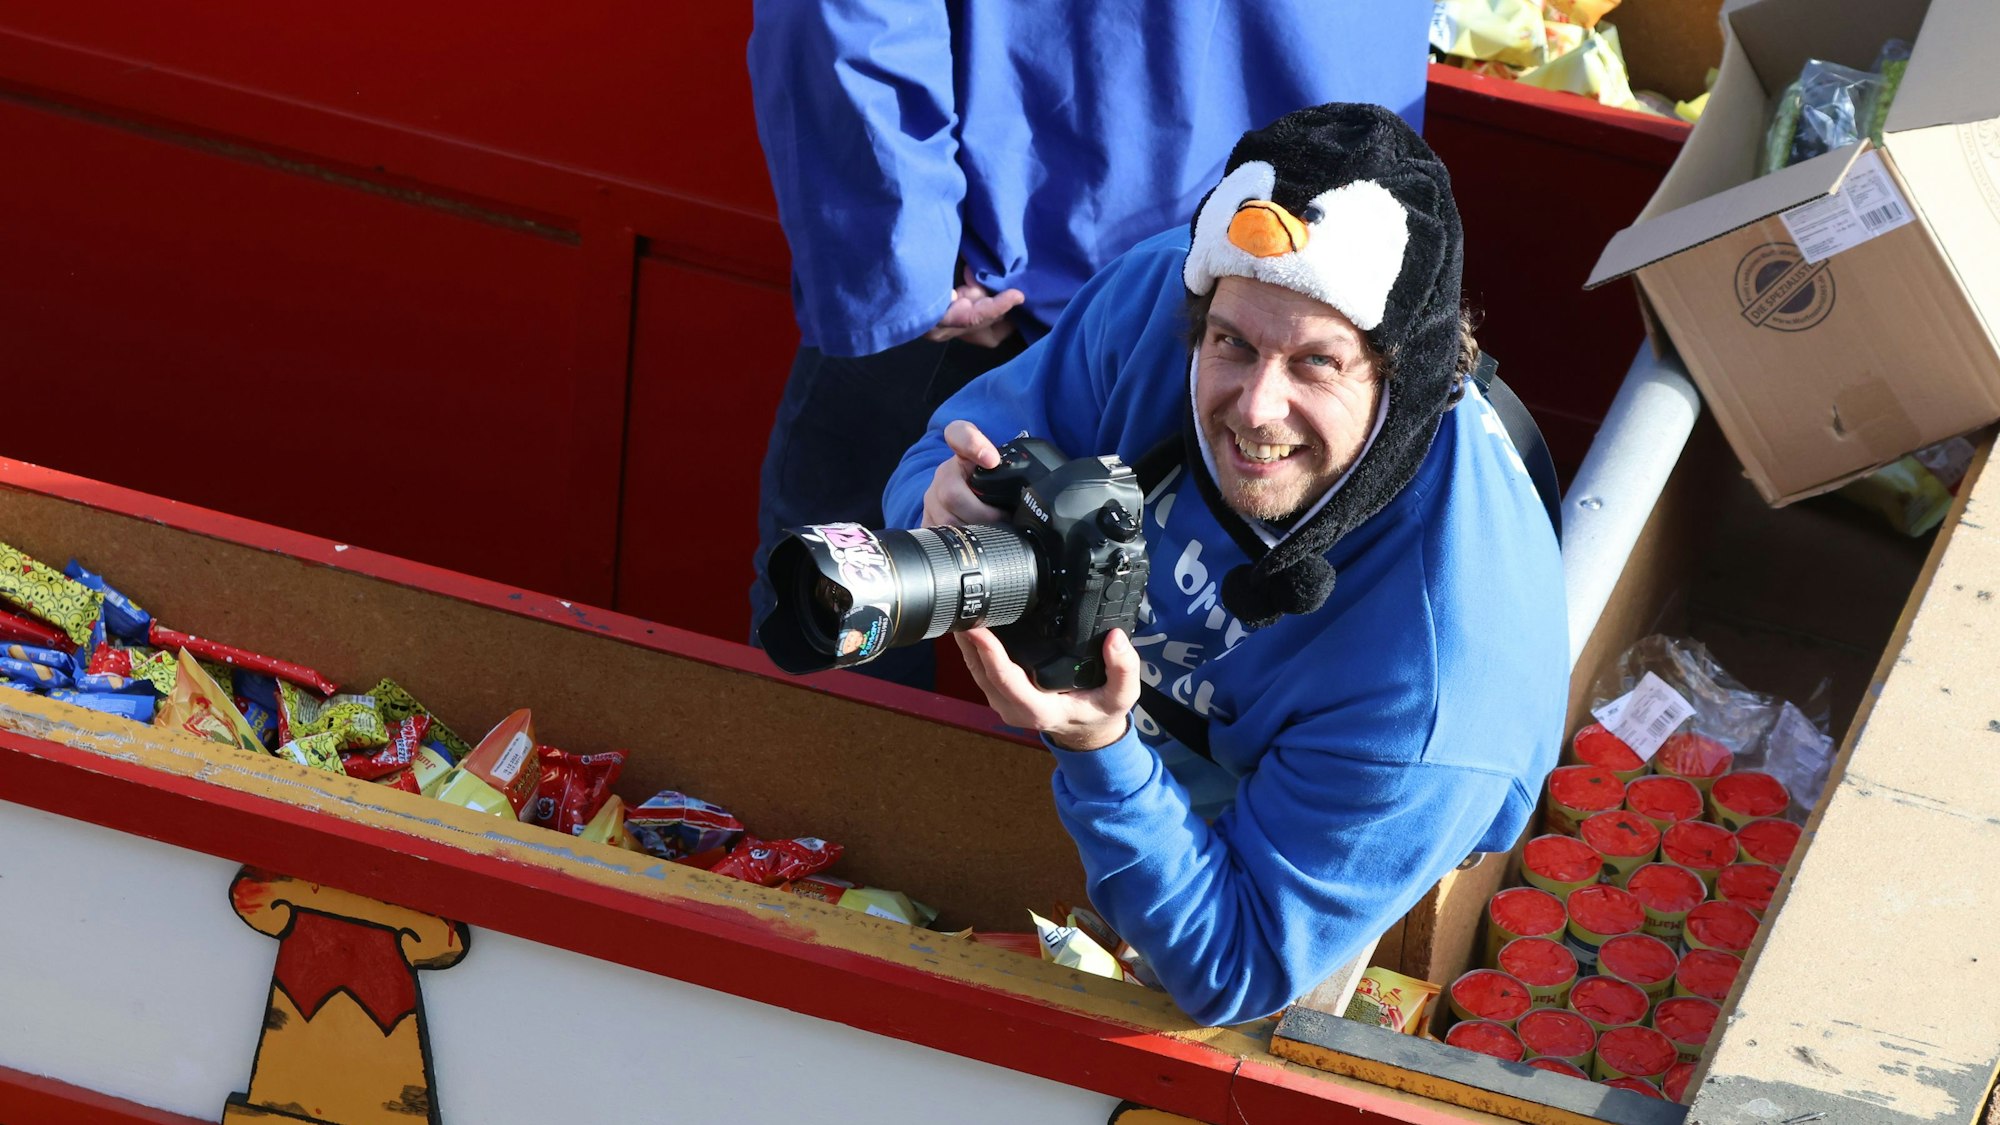 Redakteur Tom Steinicke ist mit der Kamera auf einem Wagen im Euskirchener Rosenmontagszug.